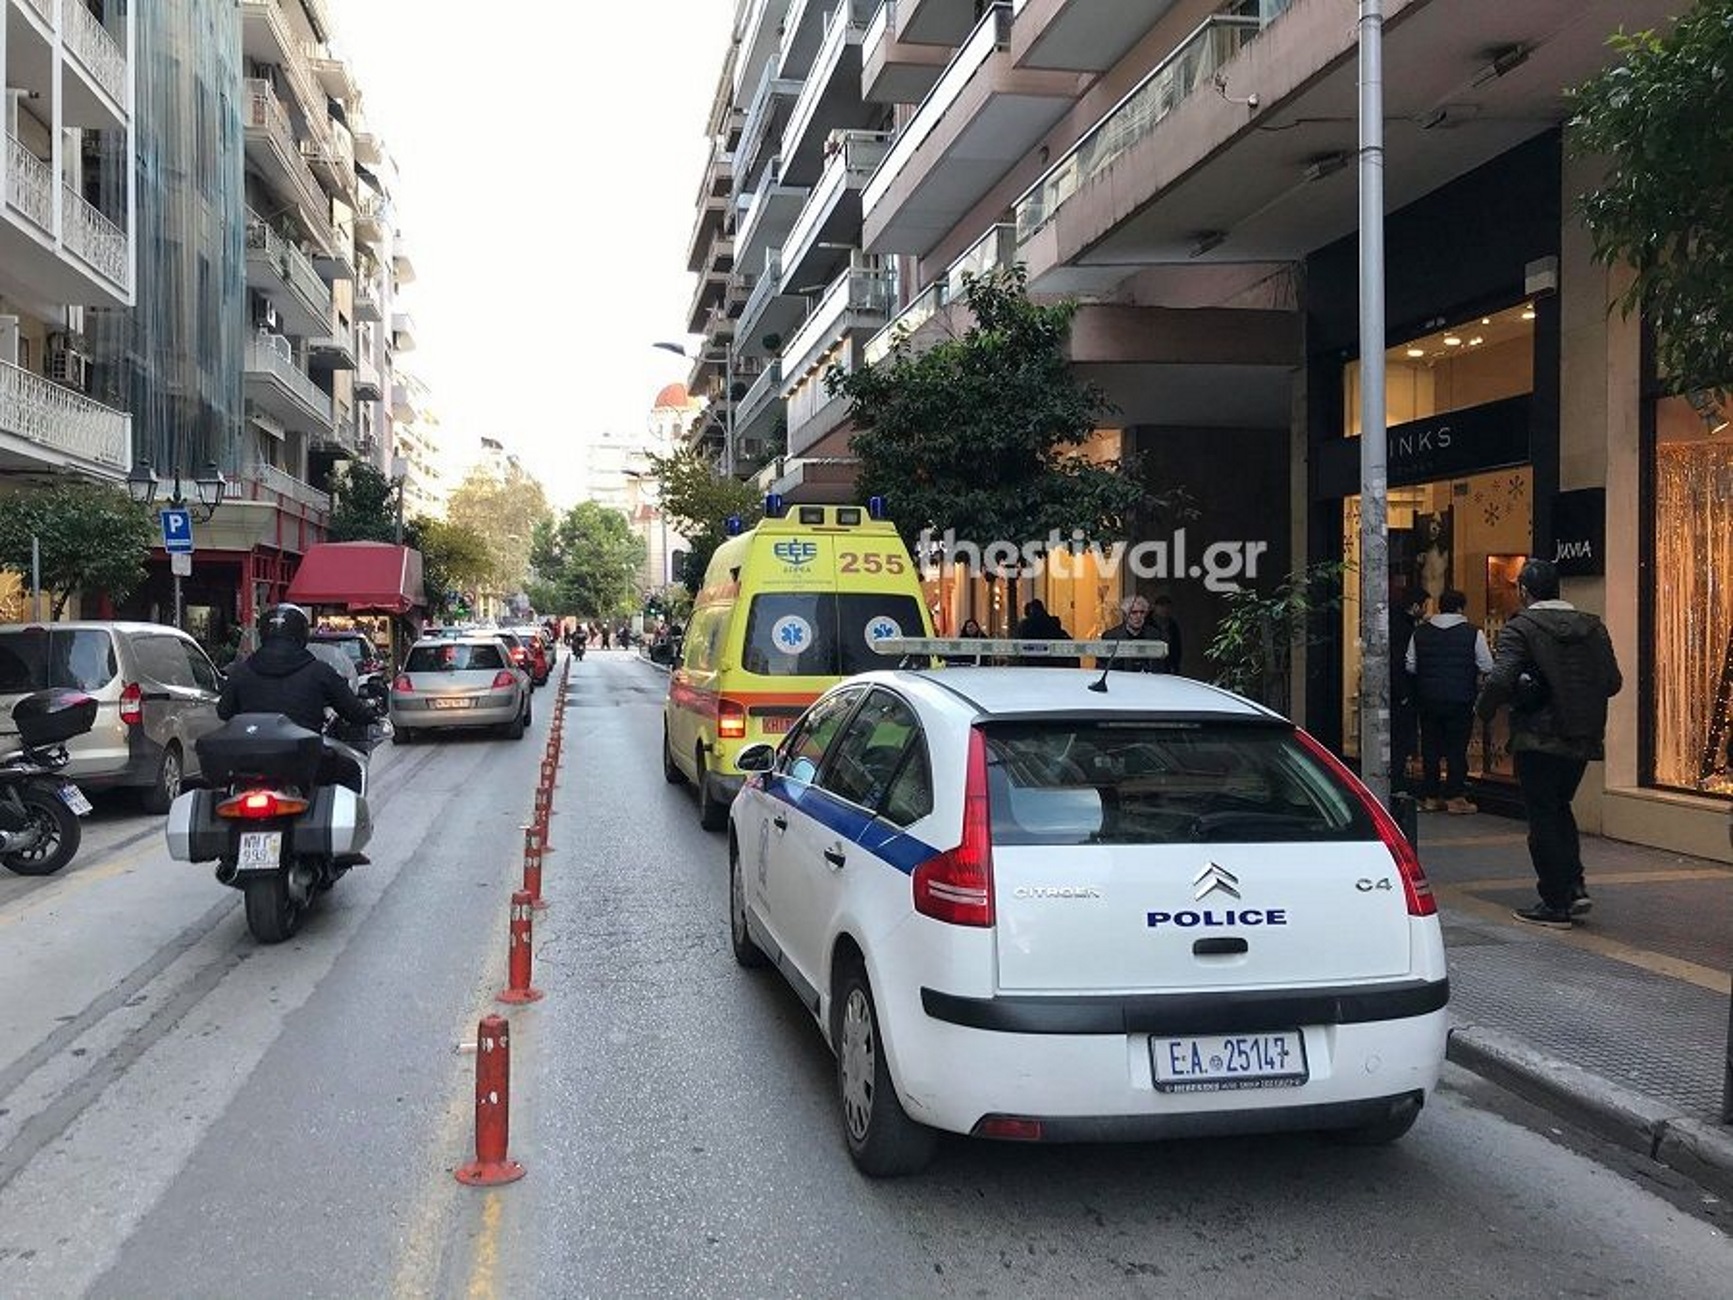 Τραγικό τέλος για άνδρα στη Θεσσαλονίκη! Έκανε βουτιά στο κενό από πολυκατοικία